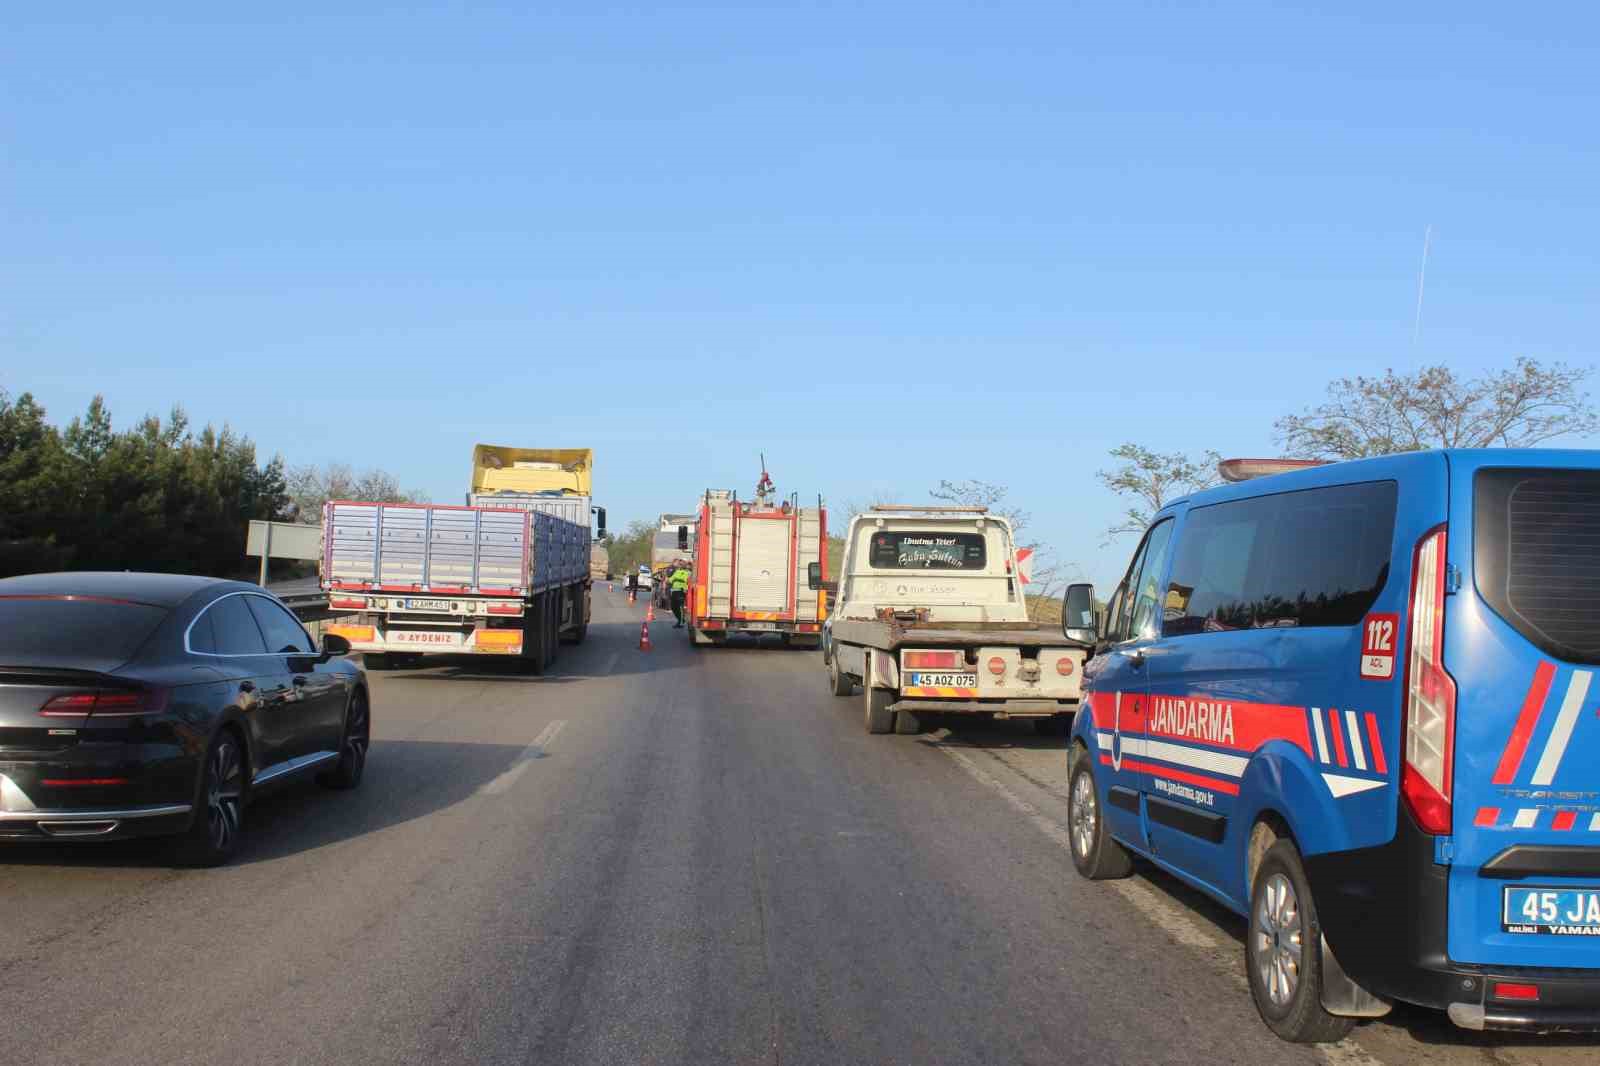 Manisa’da kamyonet tıra arkadan çarptı: 3 ölü, 1 ağır yaralı
